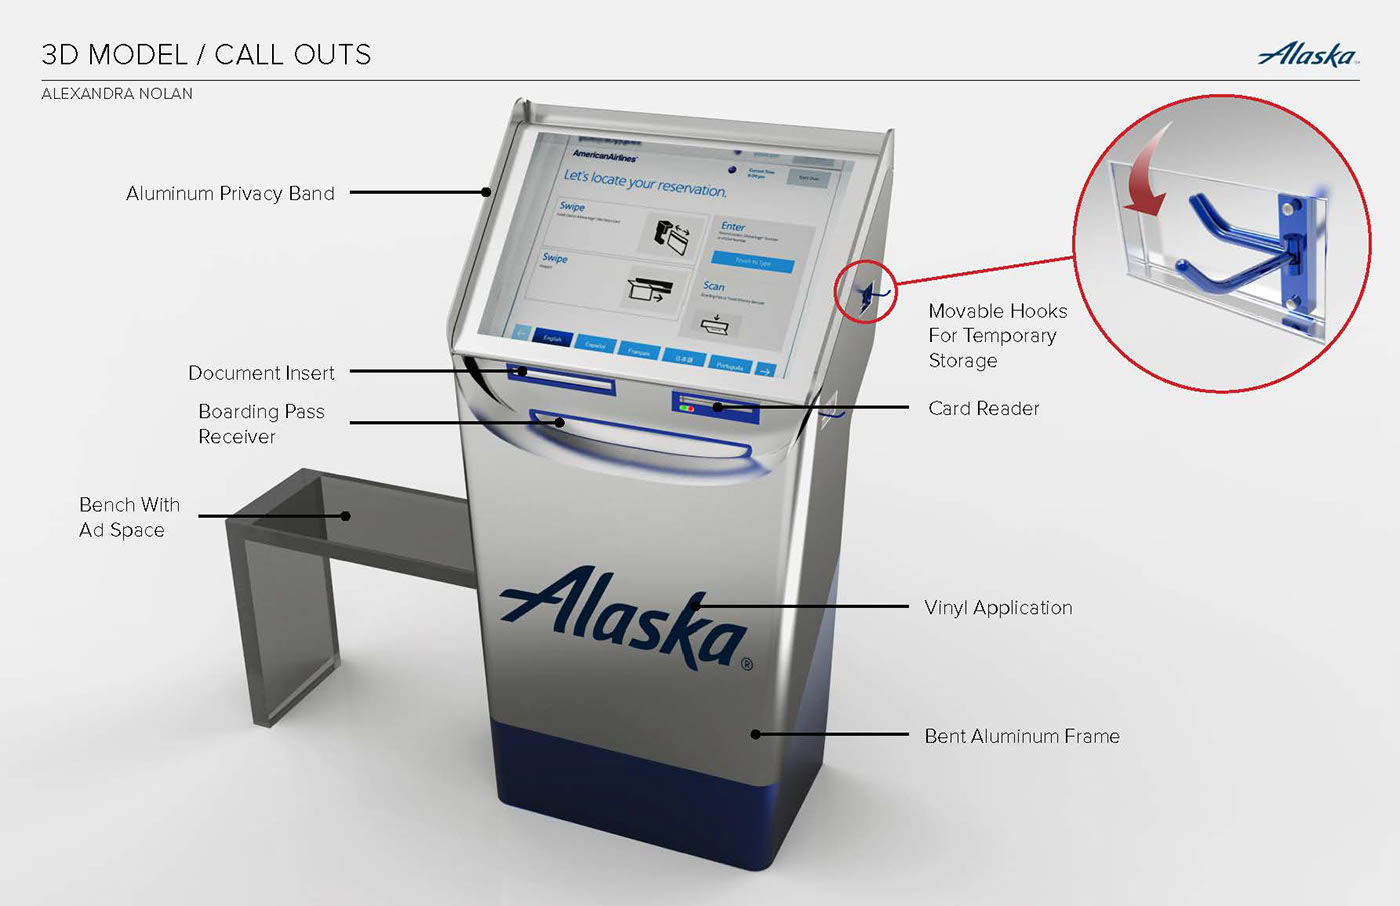 airport Alaska Airline Airport design Kiosk